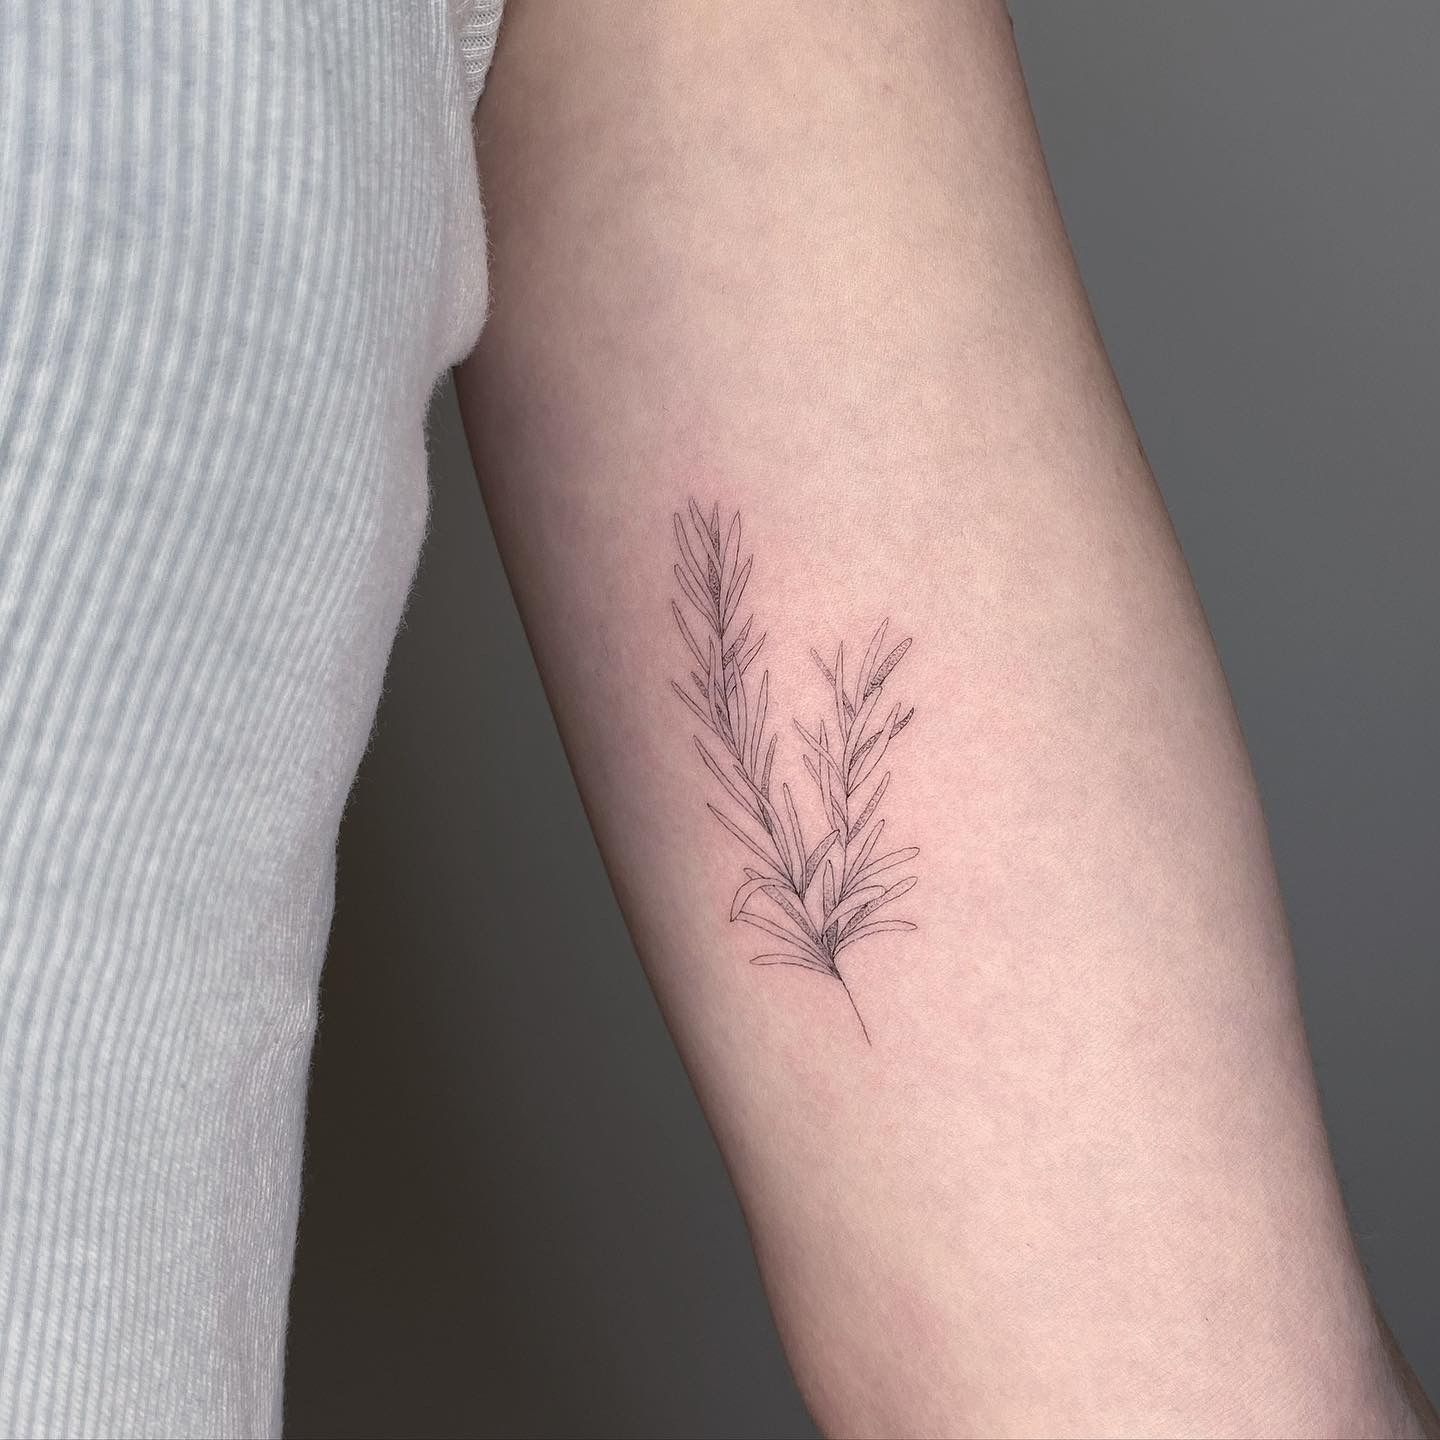 Pine branch for Ben    tattoo tattooing tattooartist tattoos art  drawing tattooart illustration illustrativetattoo  Instagram